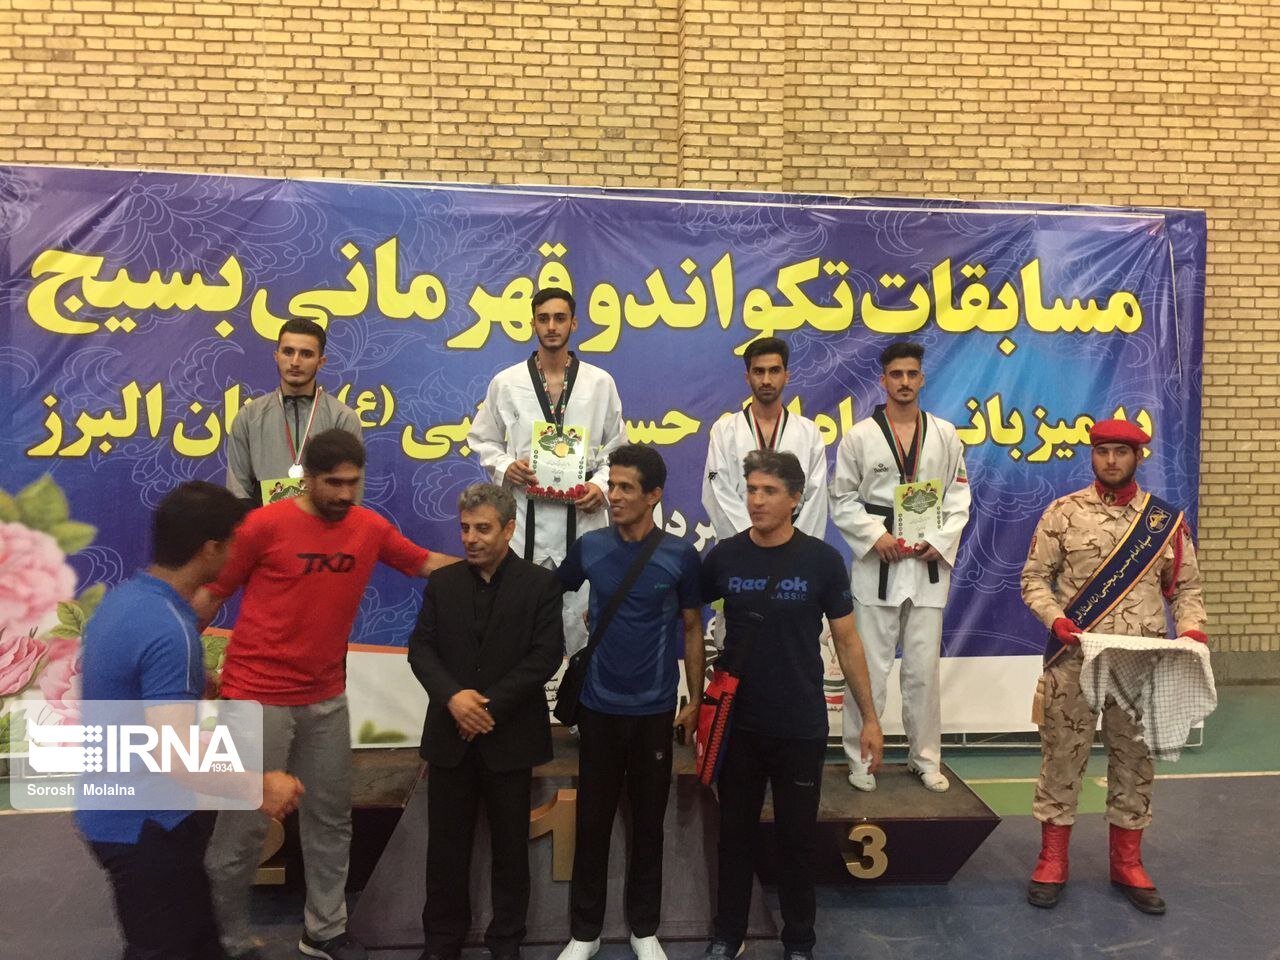 تکواندوکاران بسیجی استان سمنان در مسابقات قهرمانی کشور نشان برنز برگردن آویختند